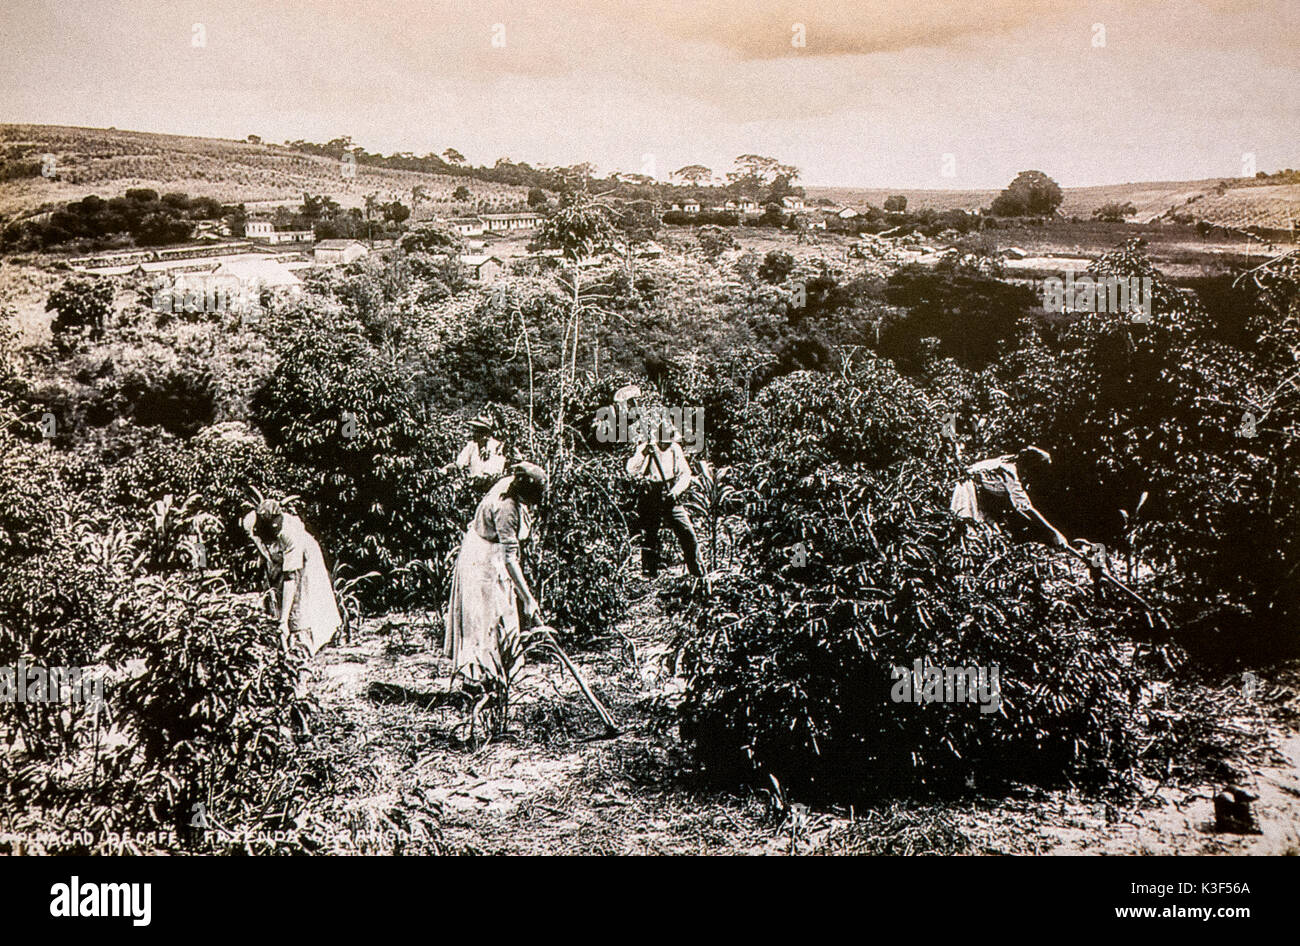 Brasil La inmigración italiana a principios de 1900 -desmalezado de café. El desmalezado del suelo es uno de los inmigrantes italianos tareas Foto de stock